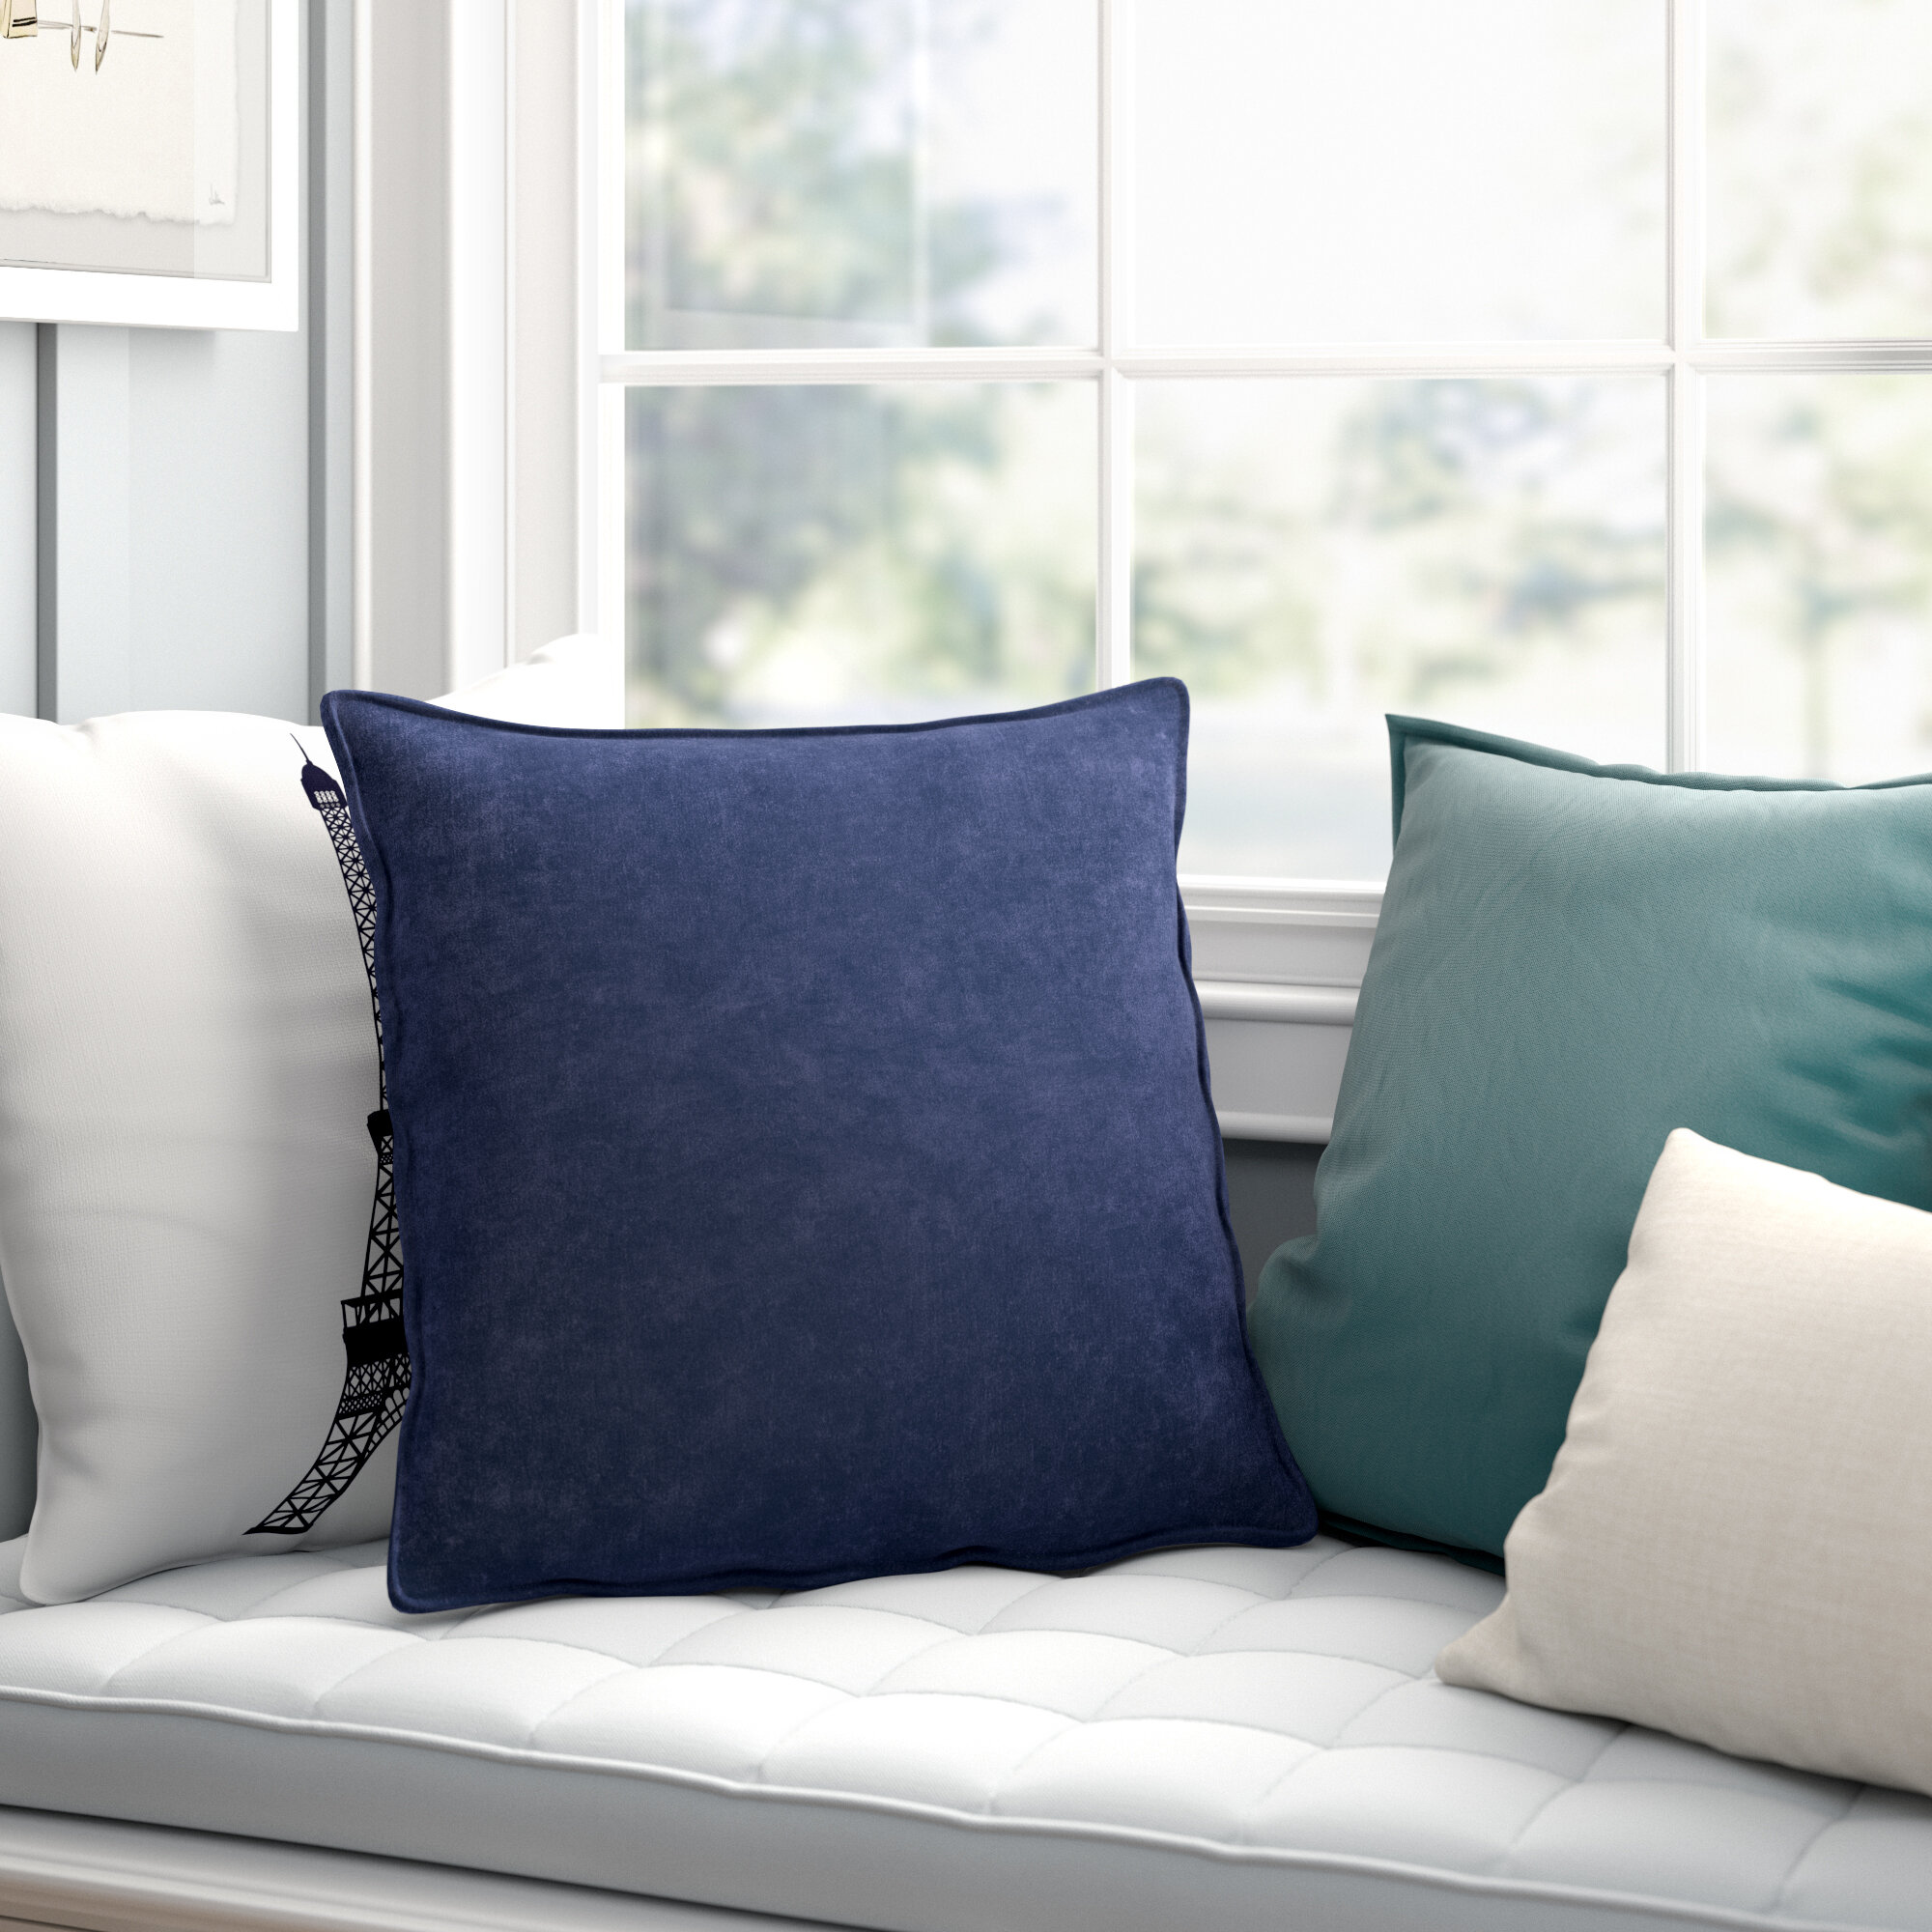 Funny Art Words Cotton Linen Pillow Case Sofa Throw Cushion Cover Home Decor 